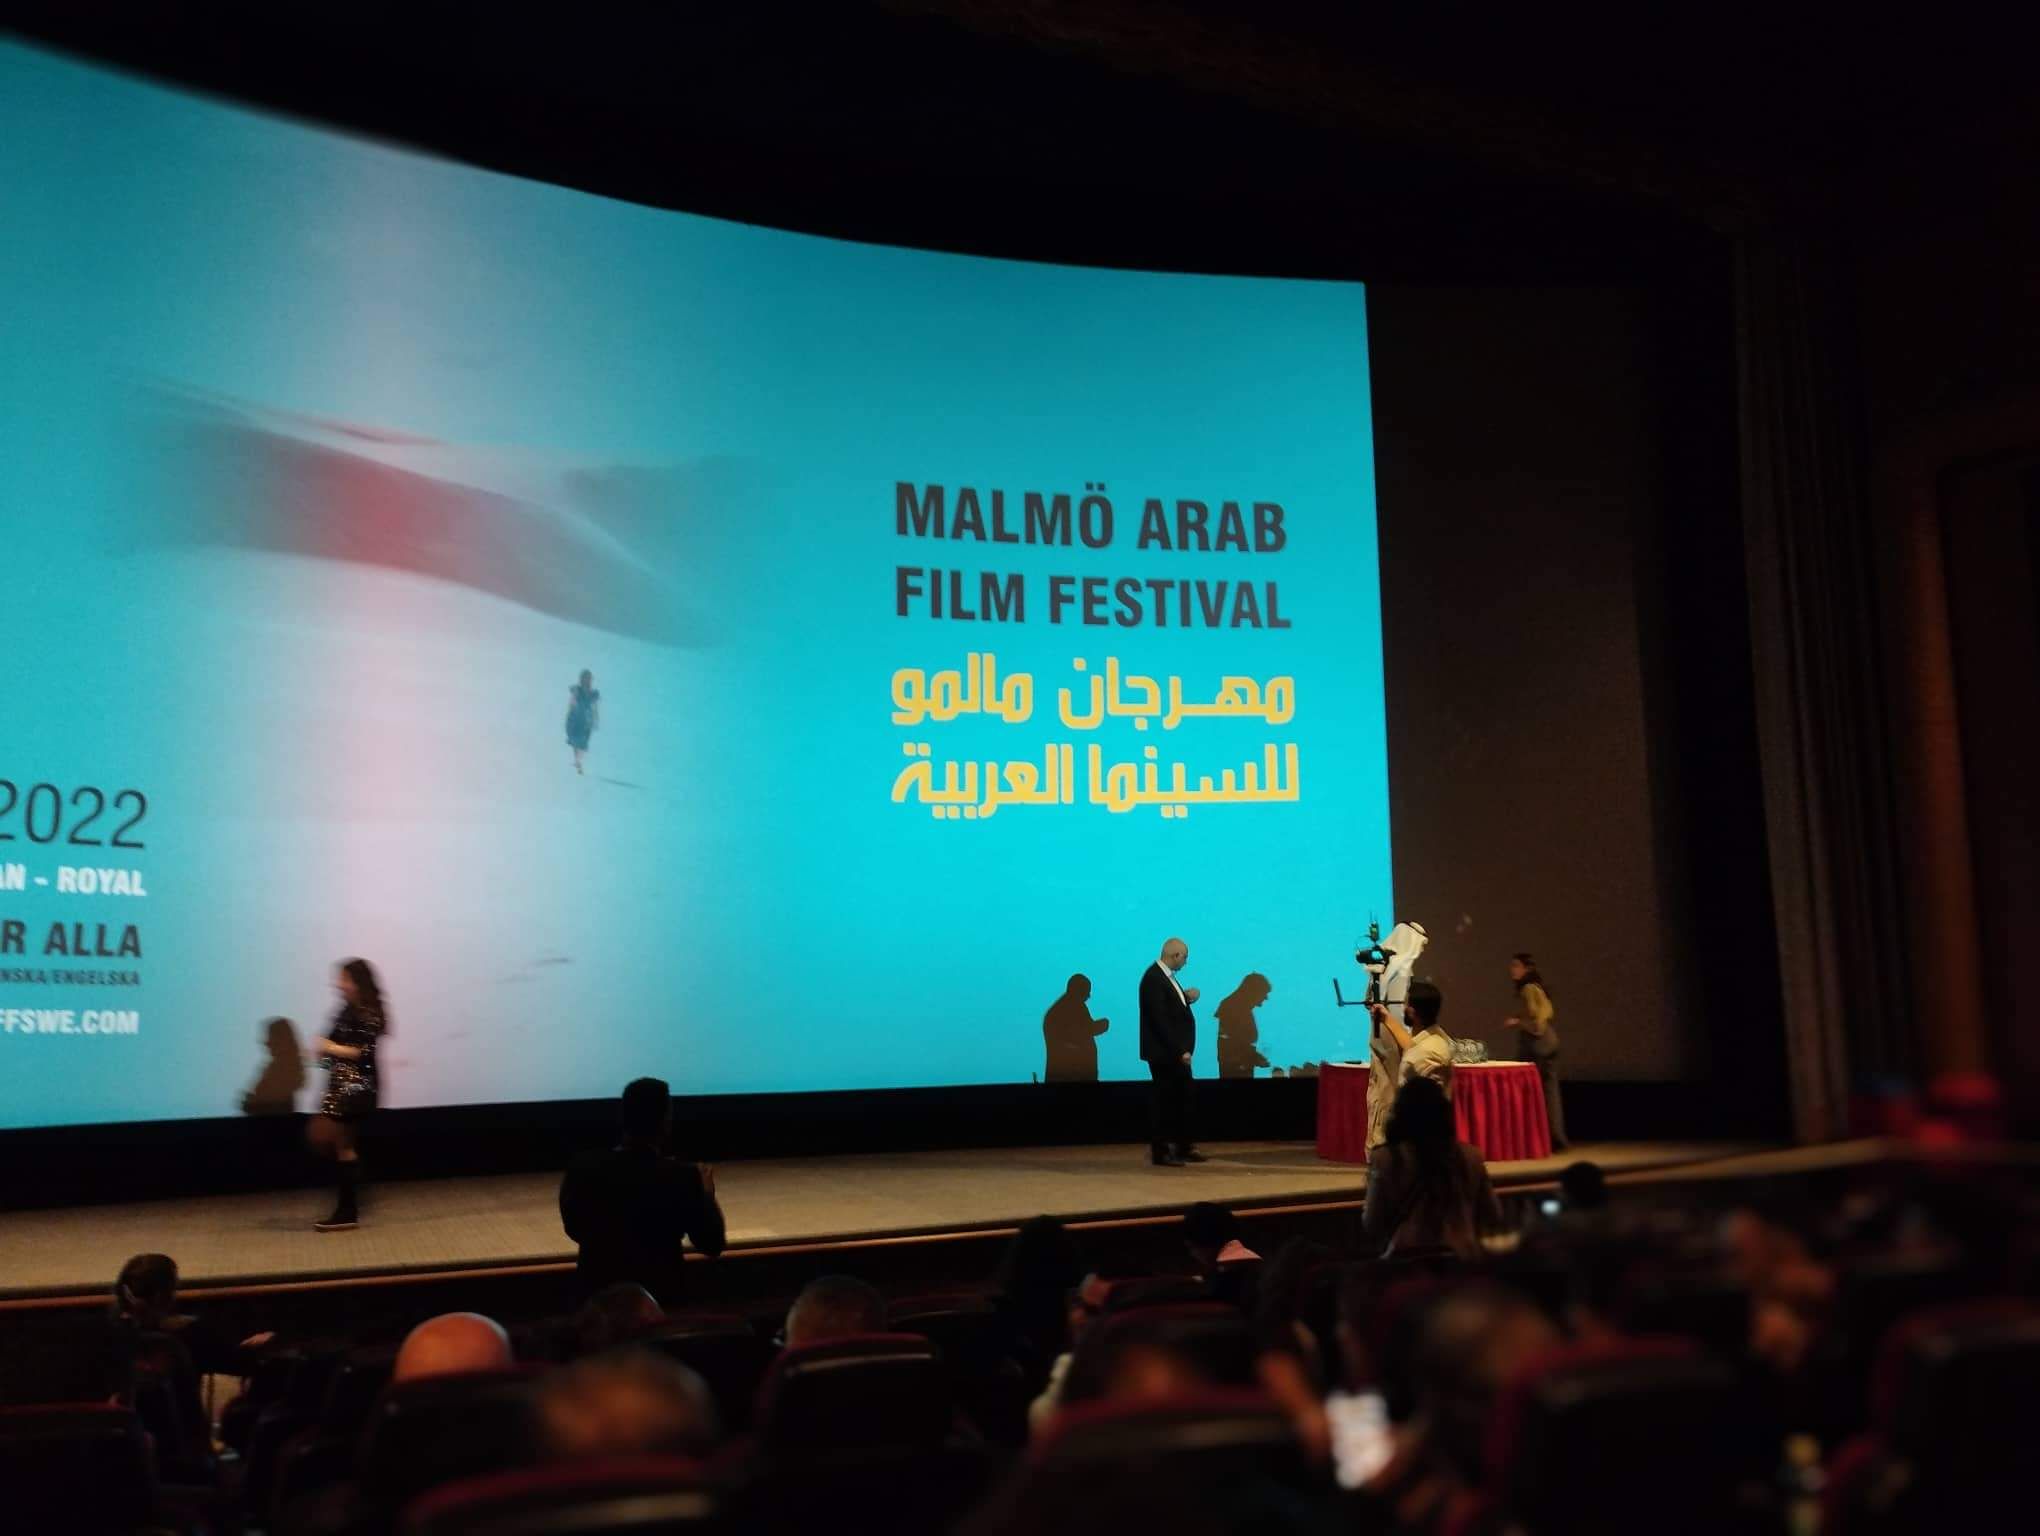 الوثائقي من القاهرة يفوز بجائزة لجنة تحكيم مهرجان مالمو للسينما العربية (5)